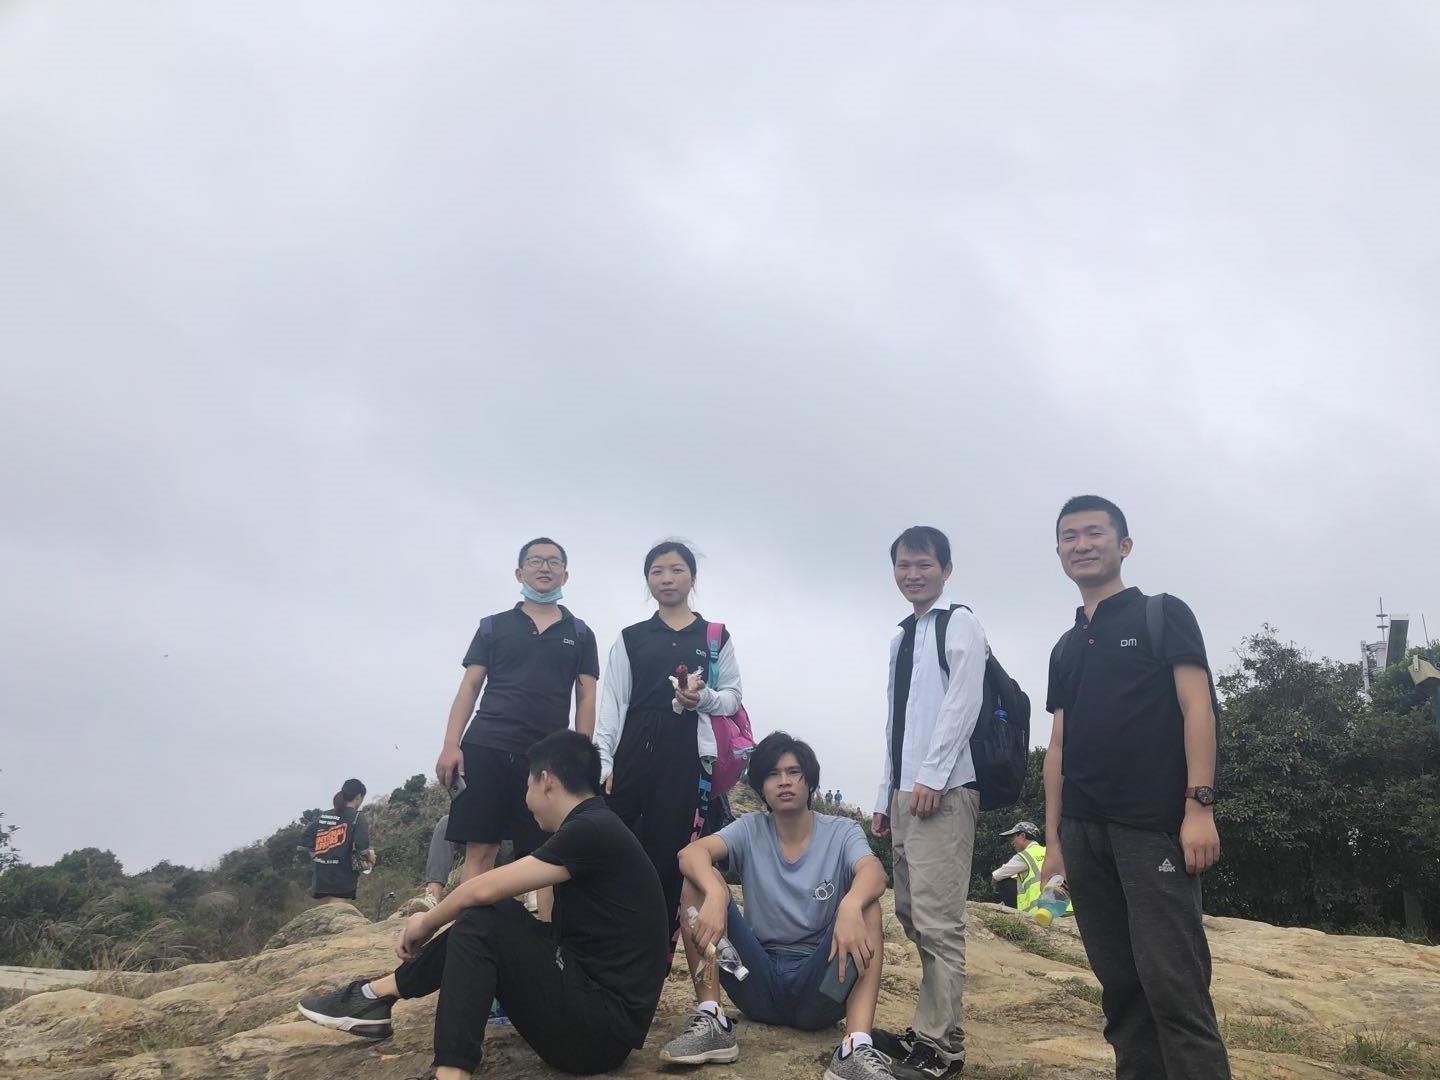 DM梁信科技2020年梧桐山爬山比赛